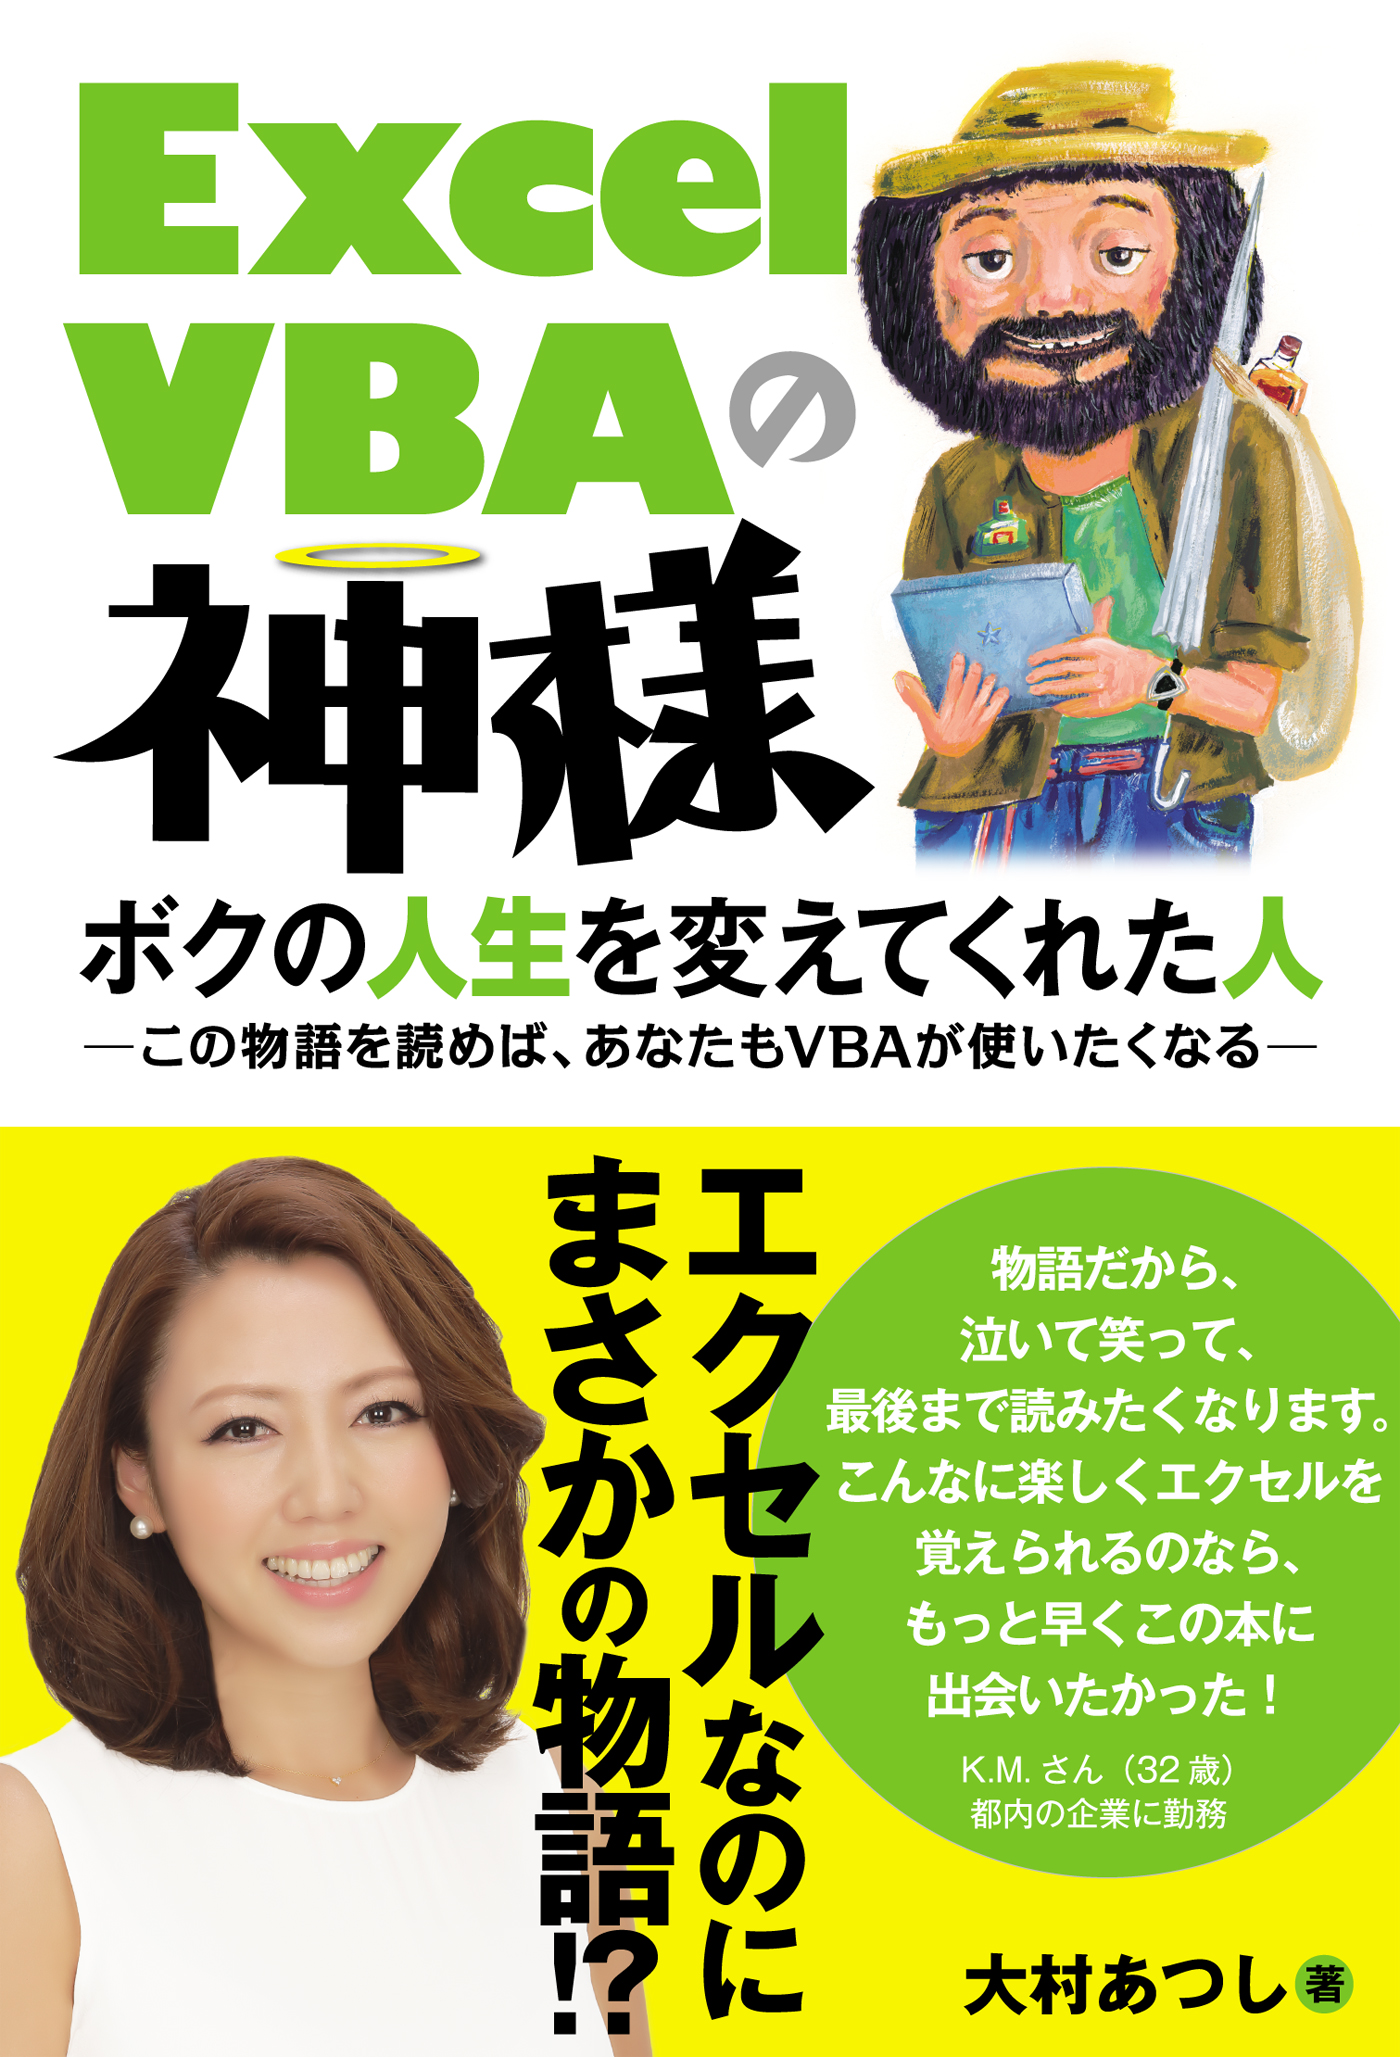 Excel VBAの神様 ボクの人生を変えてくれた人 - 大村あつし - ビジネス・実用書・無料試し読みなら、電子書籍・コミックストア ブックライブ